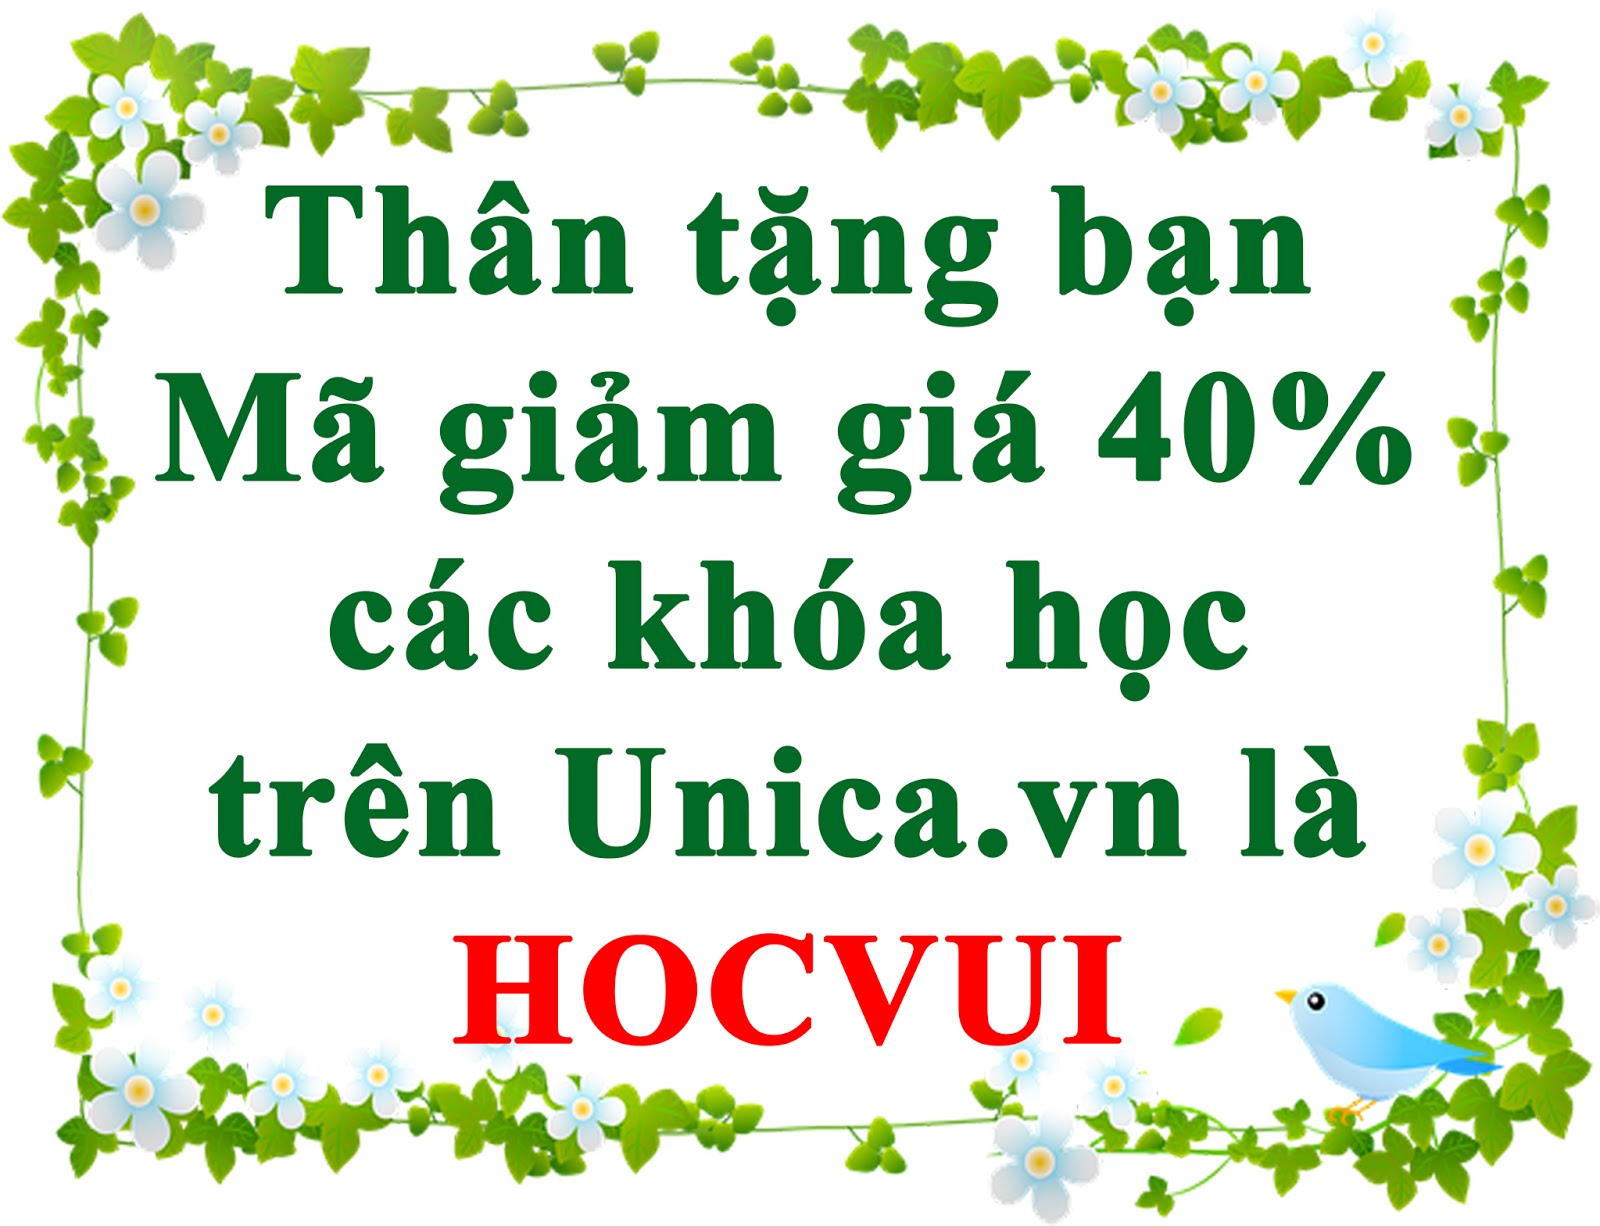 Mã giảm giá trên Unica.vn